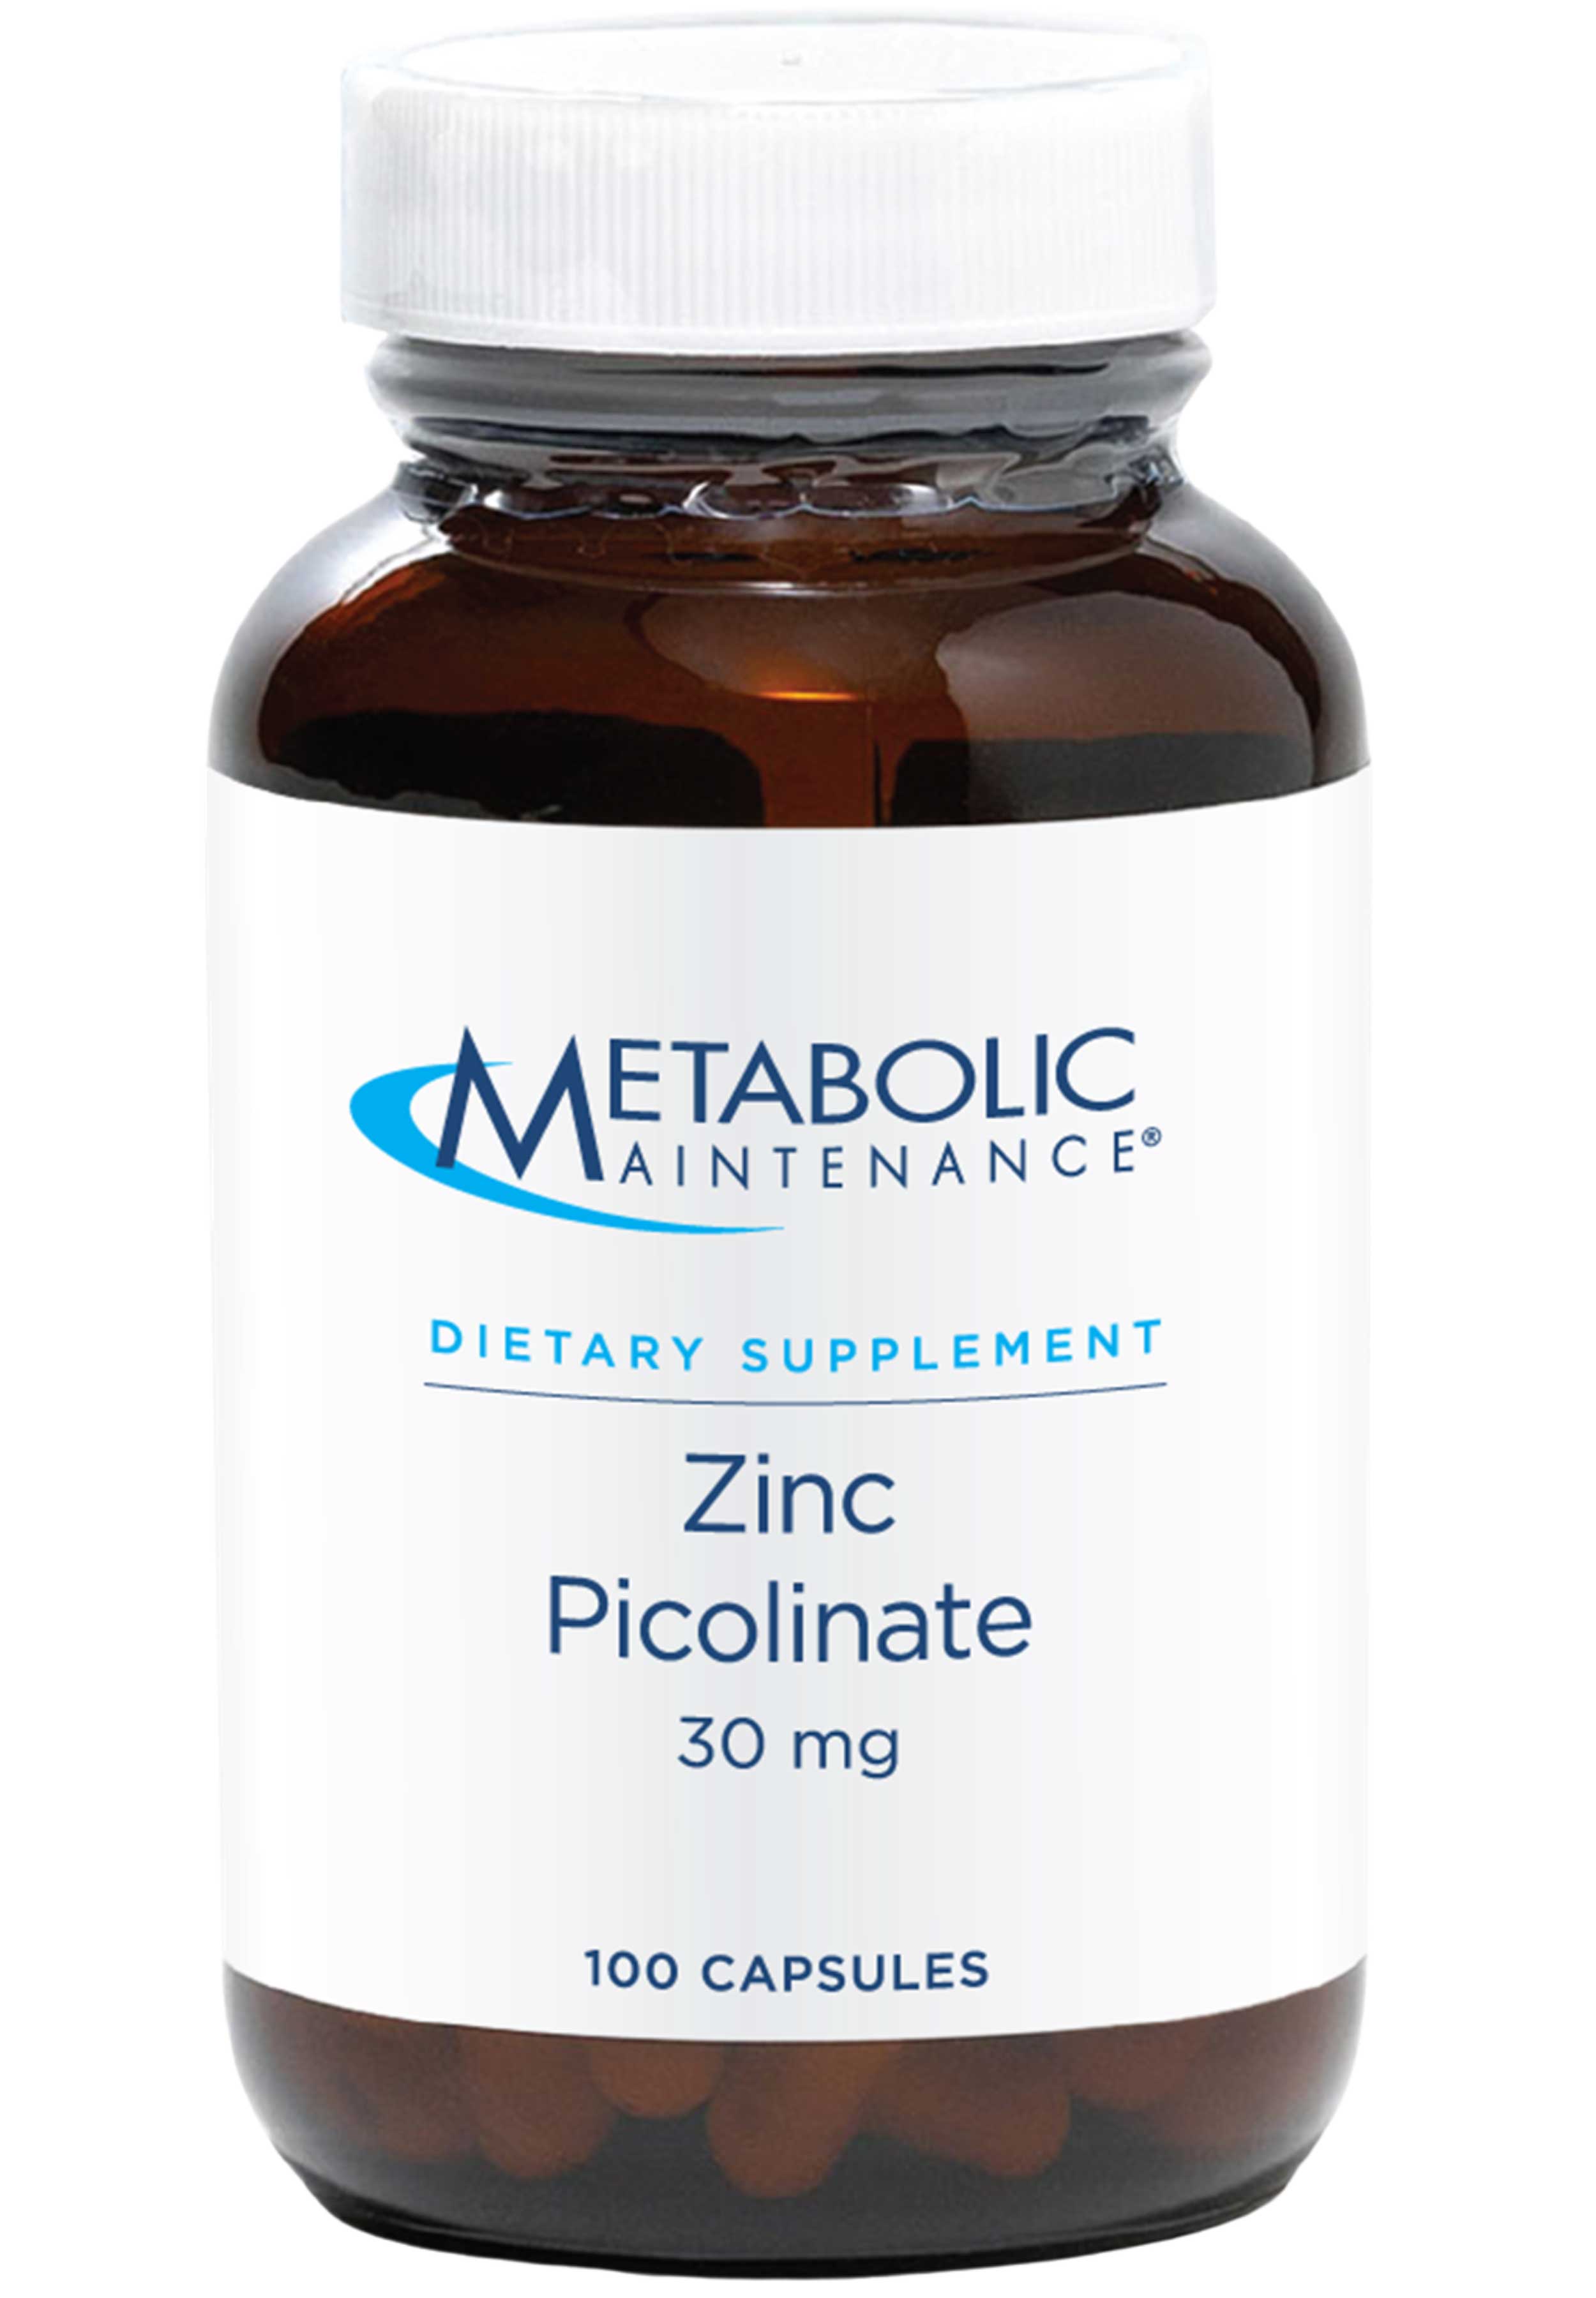 Metabolic Maintenance Zinc Picolinate 30 mg